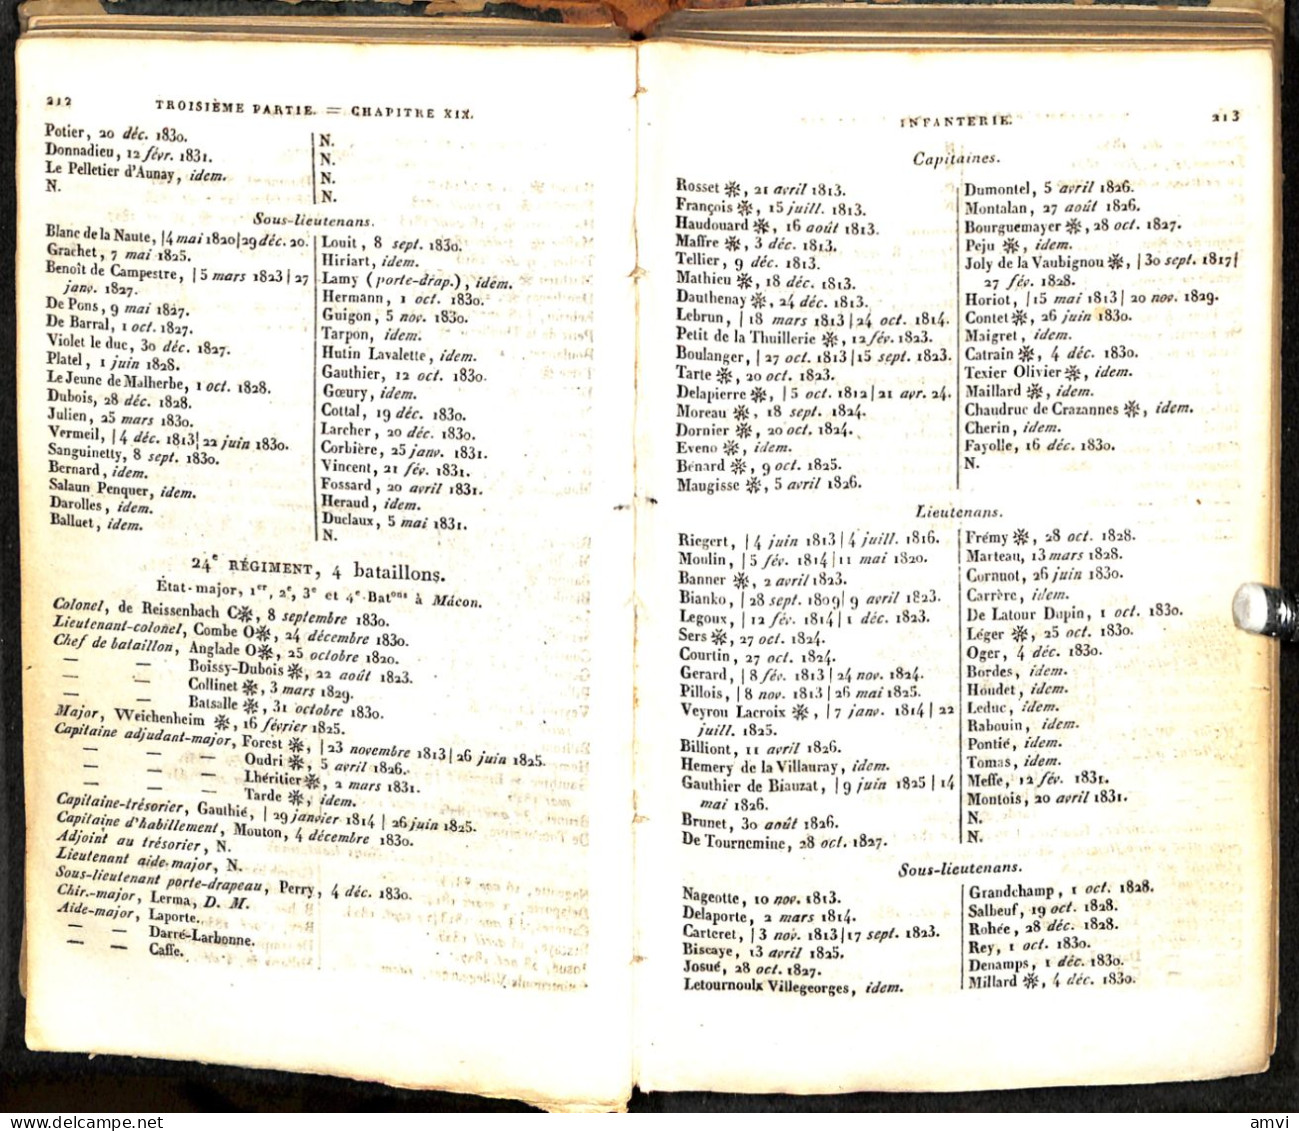 S01 - RARE! Annuaire De L'etat Militaire De  France Pour L'année 1831 Reliure En Mauvais Etat - Francese